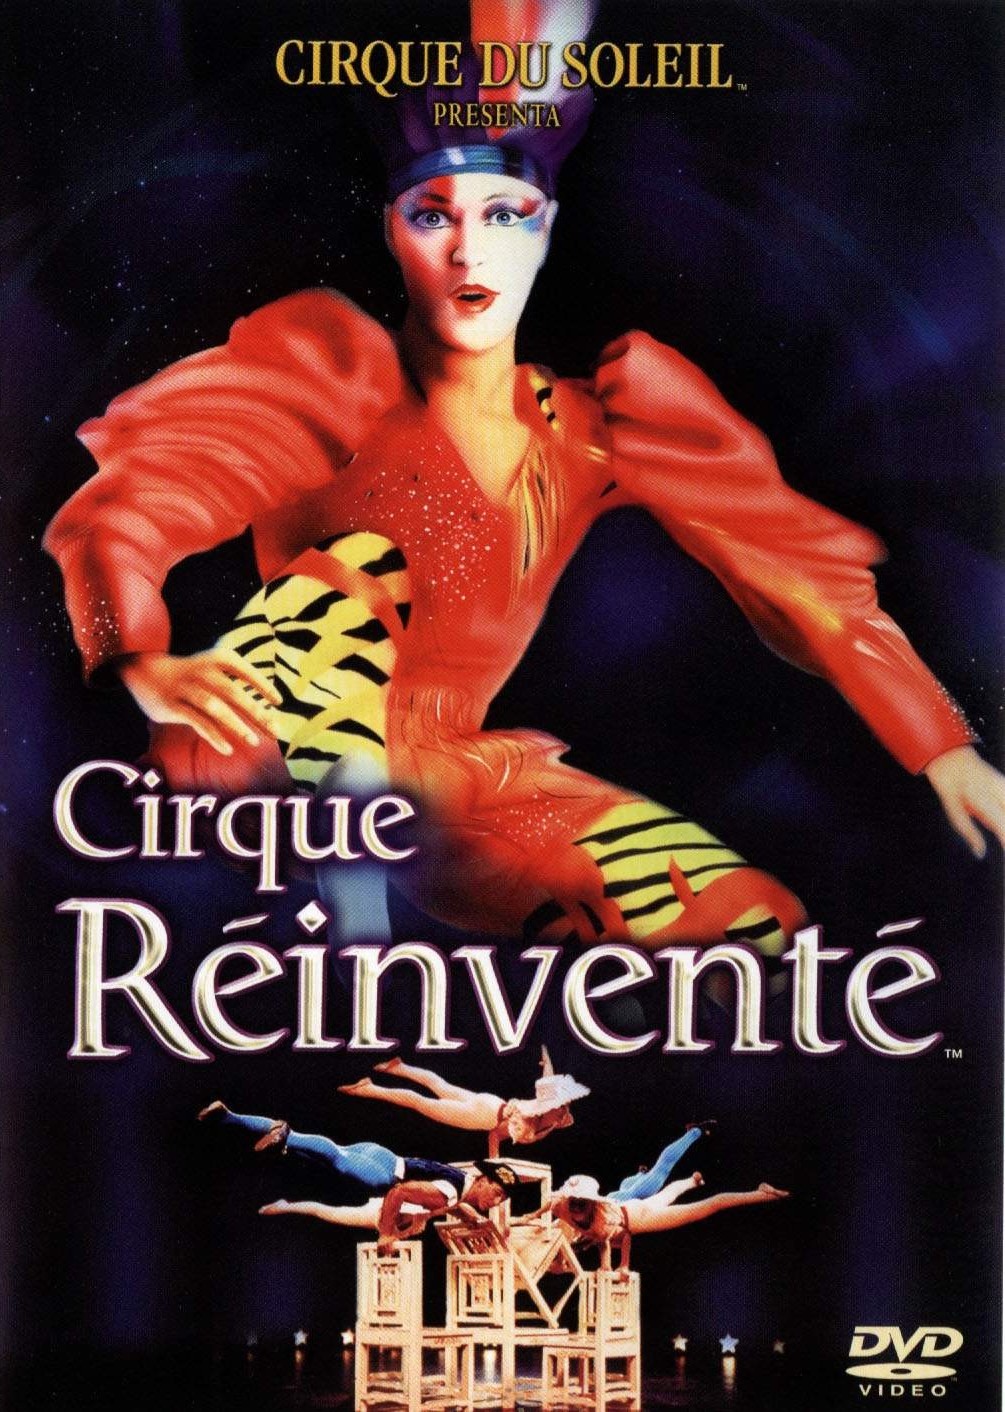 Cirque du Soleil El Circo Reinventado - Cirque du Soleil Cirque Reinvente (1815)